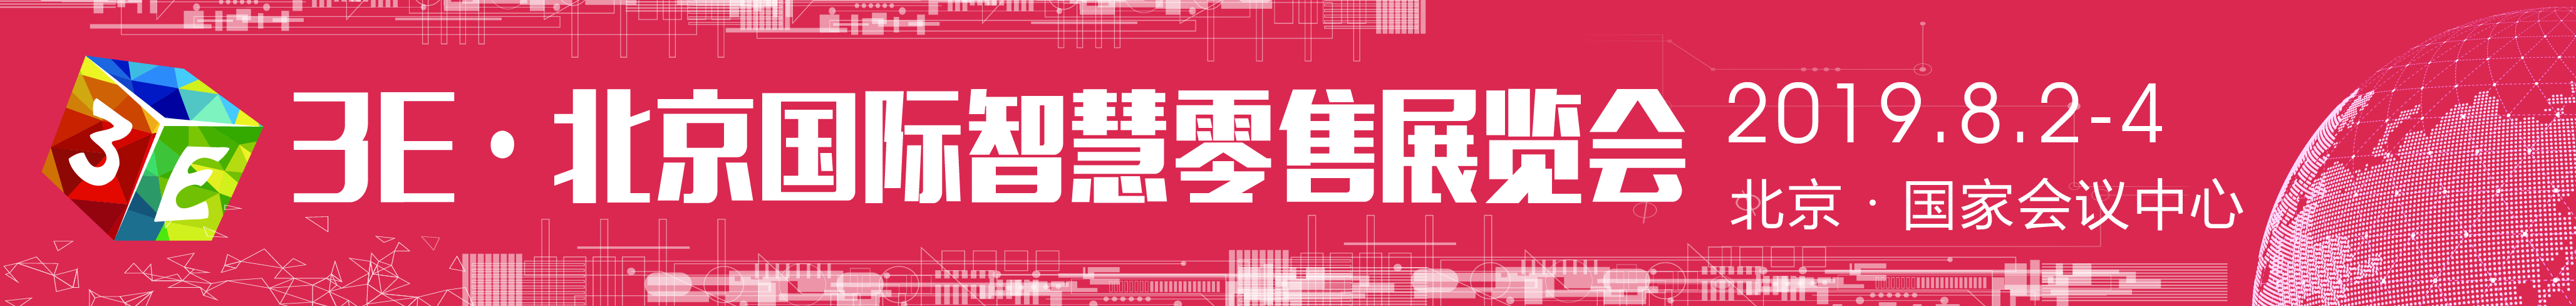 2019国际（北京）智慧零售及无人售货展览会